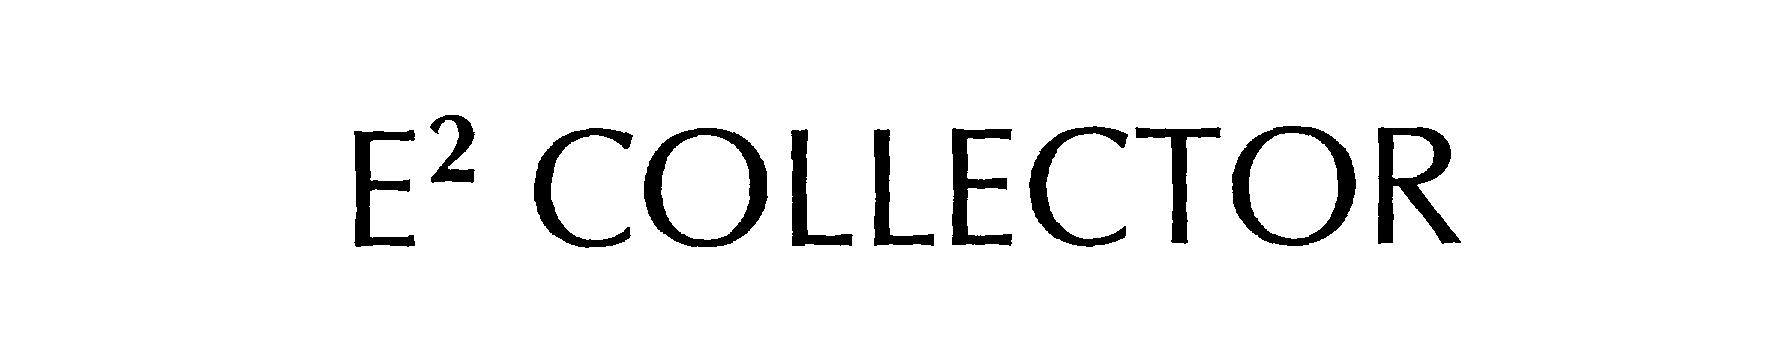 Trademark Logo E2 COLLECTOR